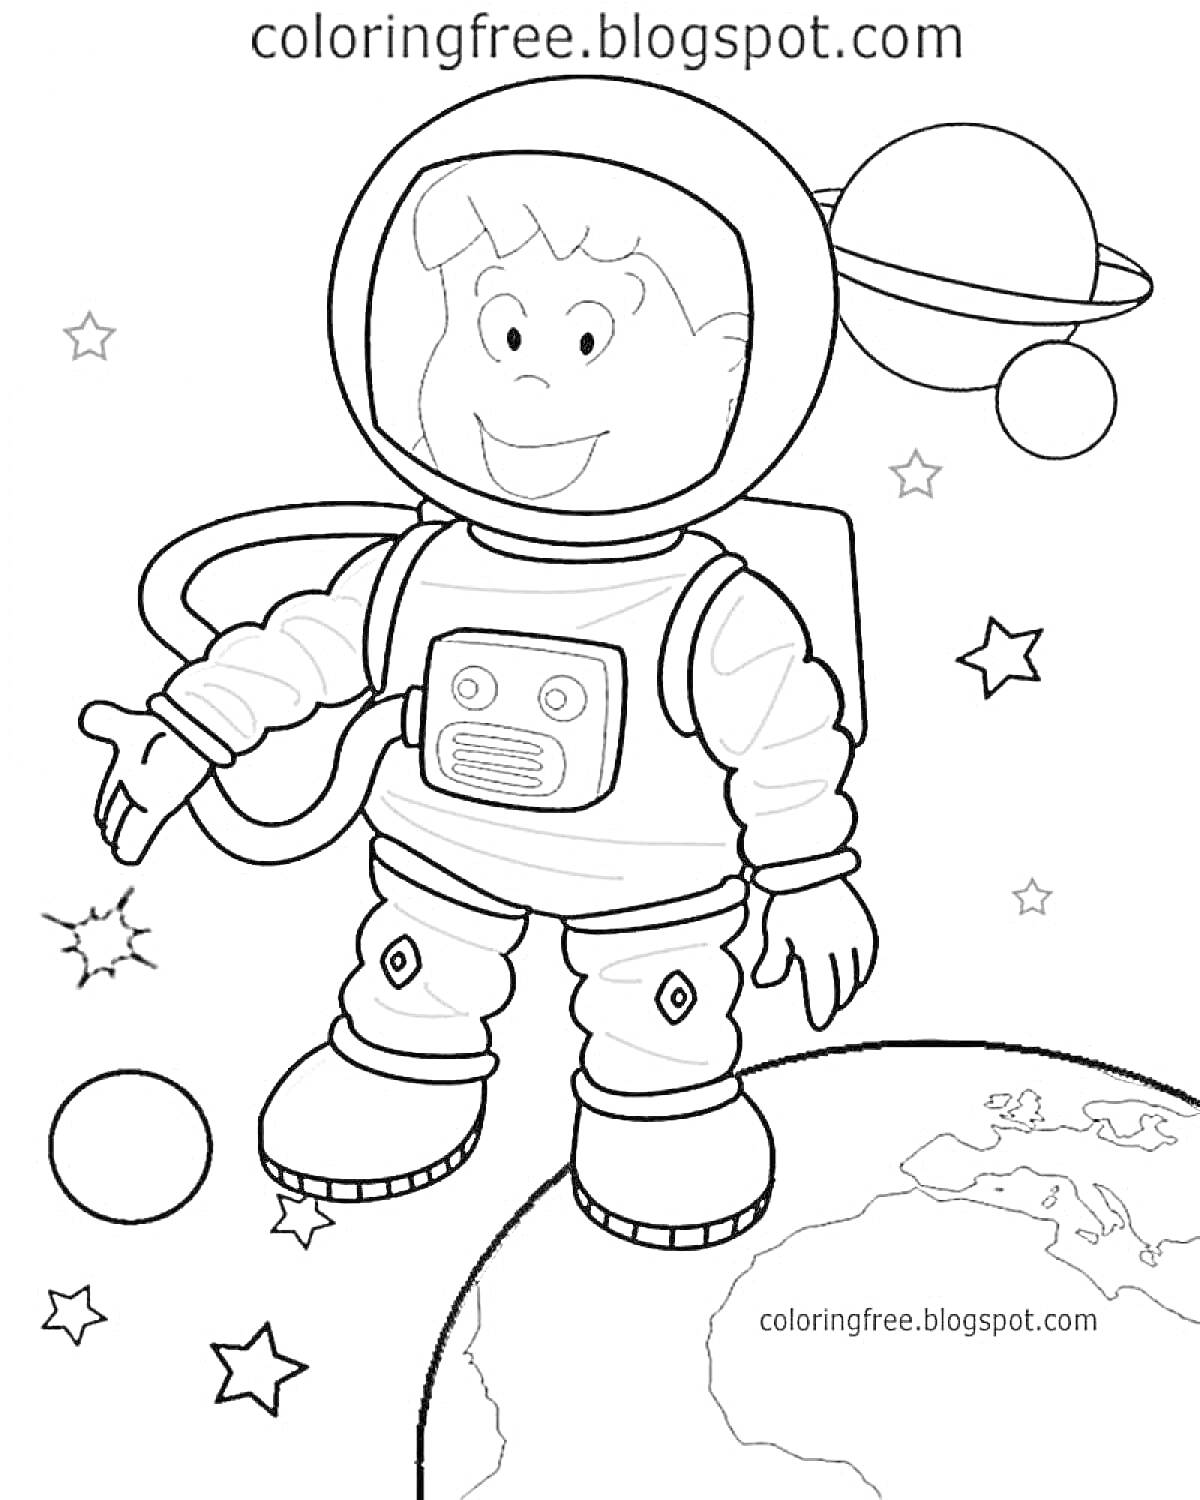 Космонавт в космосе, стоящий на планете Земля, с окружающими звездами и планетами